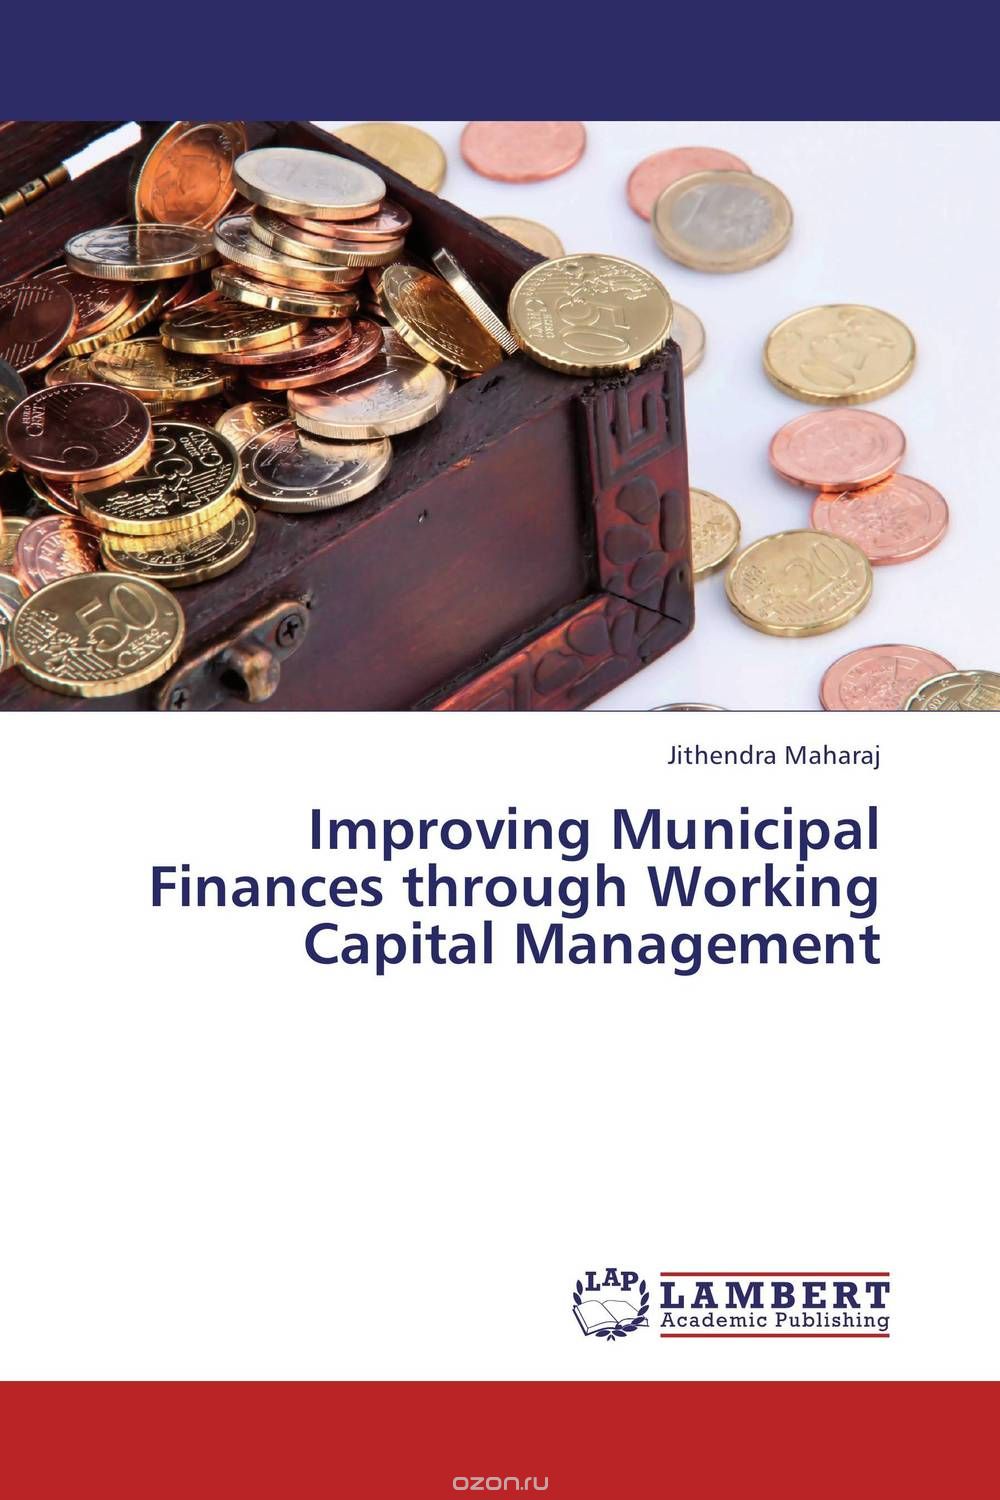 Скачать книгу "Improving Municipal Finances through Working Capital Management"